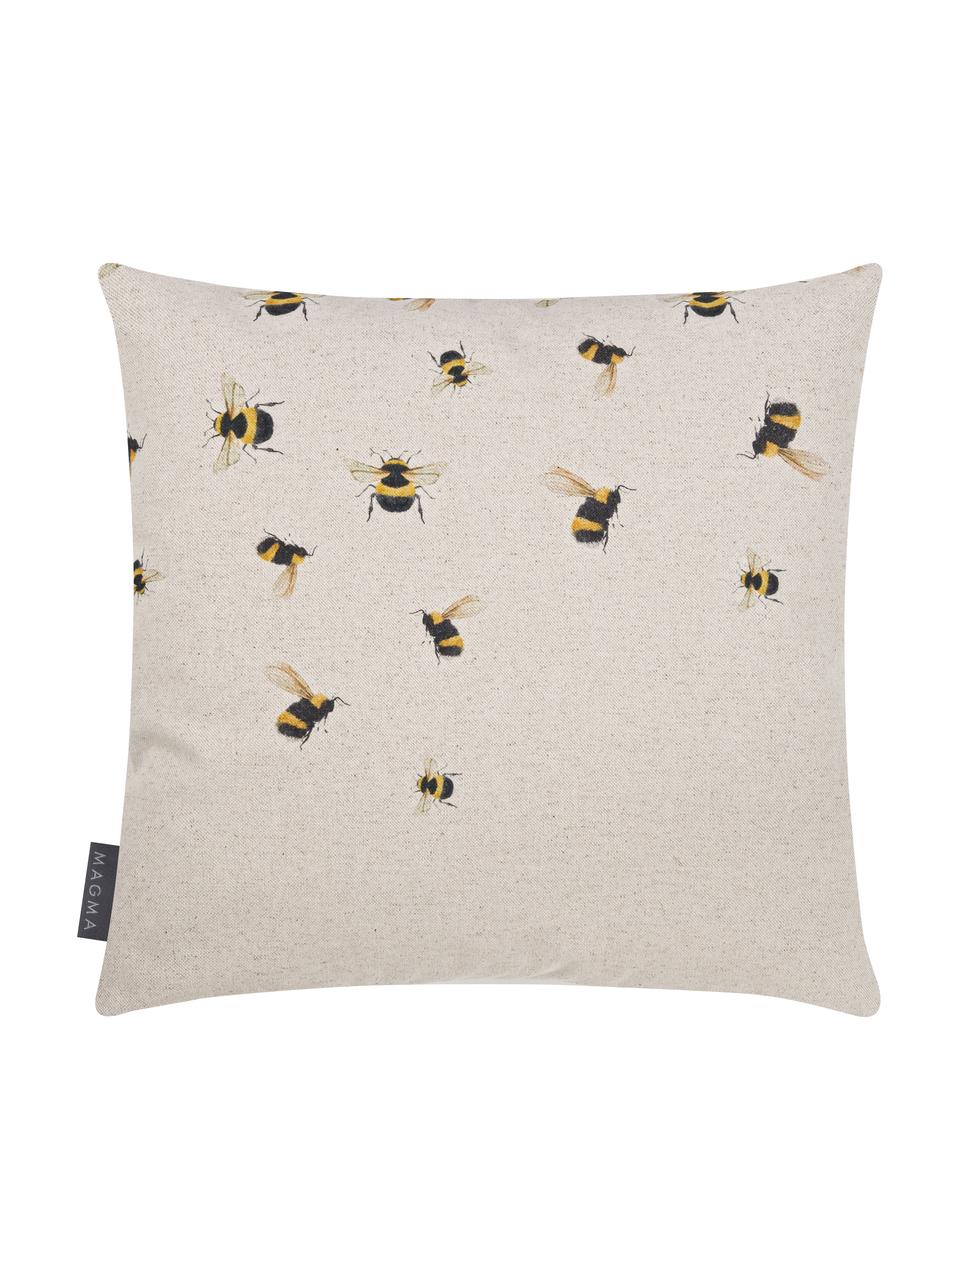 Dubbelzijdige kussenhoes Biene, 85% katoen, 15% linnen, Beige, geel, zwart, 40 x 40 cm